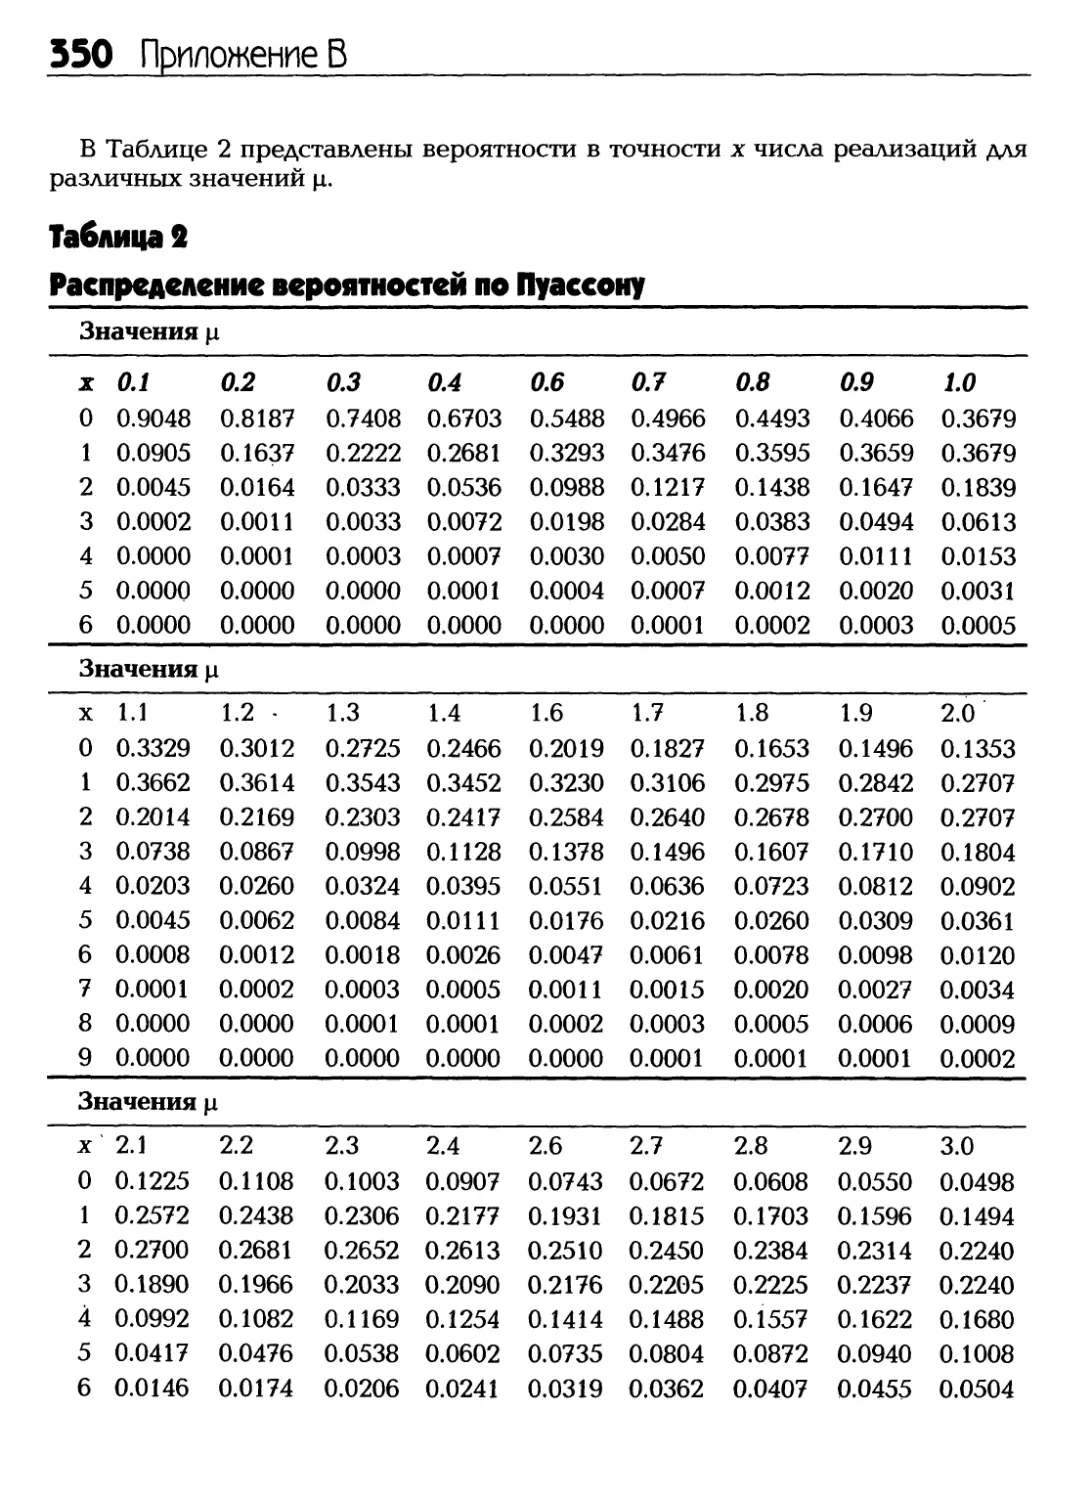 Таблица 2. Распределение вероятностей по Пуассону